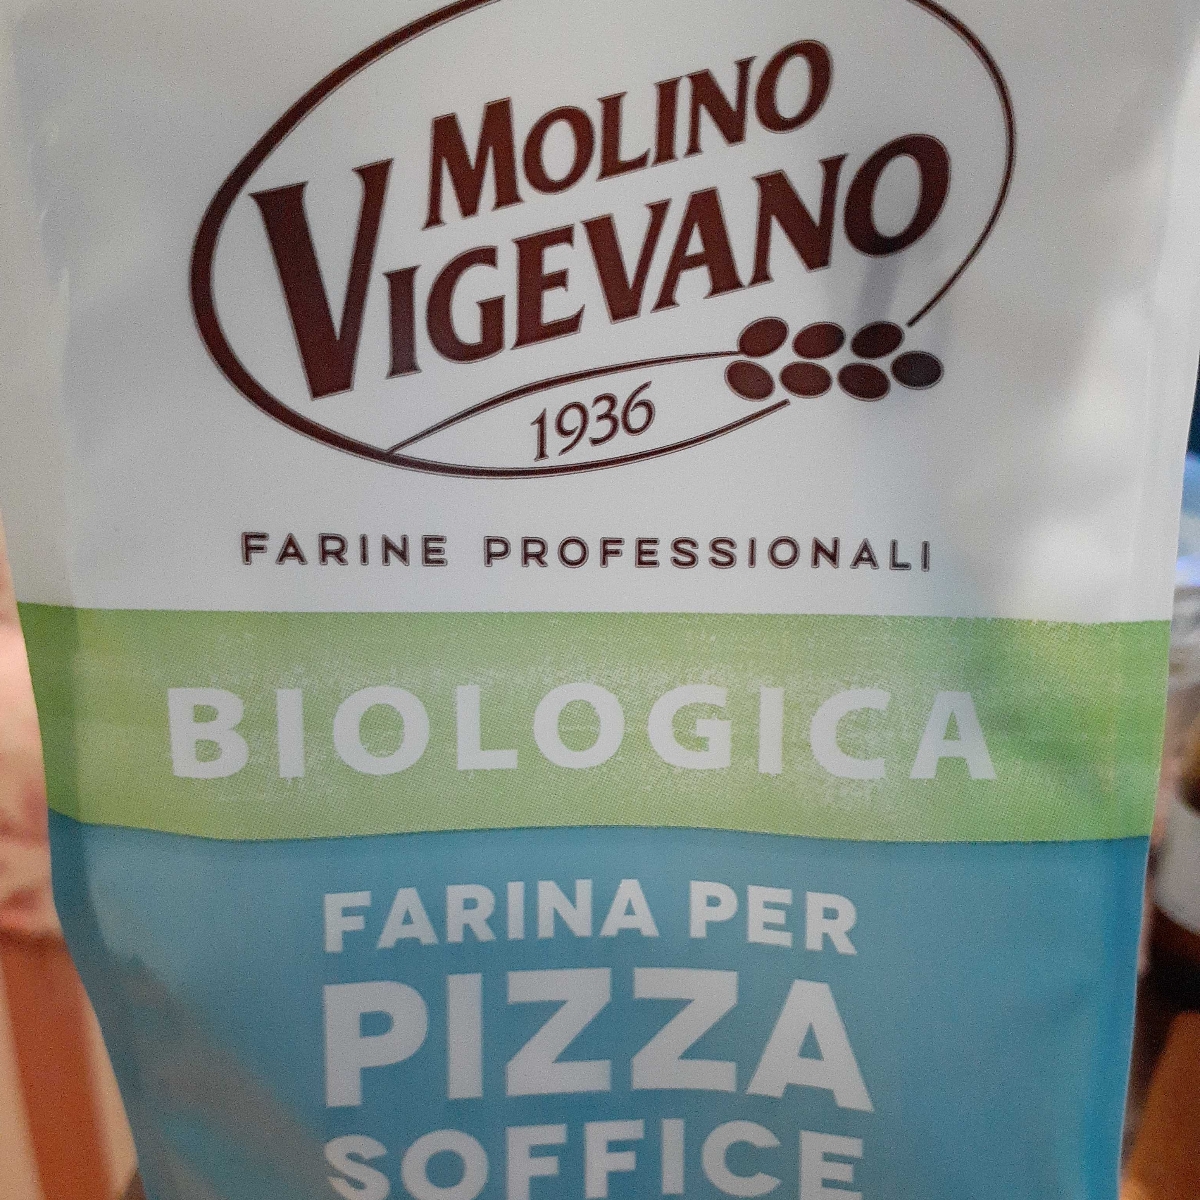 Molino Vigevano 1936 Farina per pizza Reviews